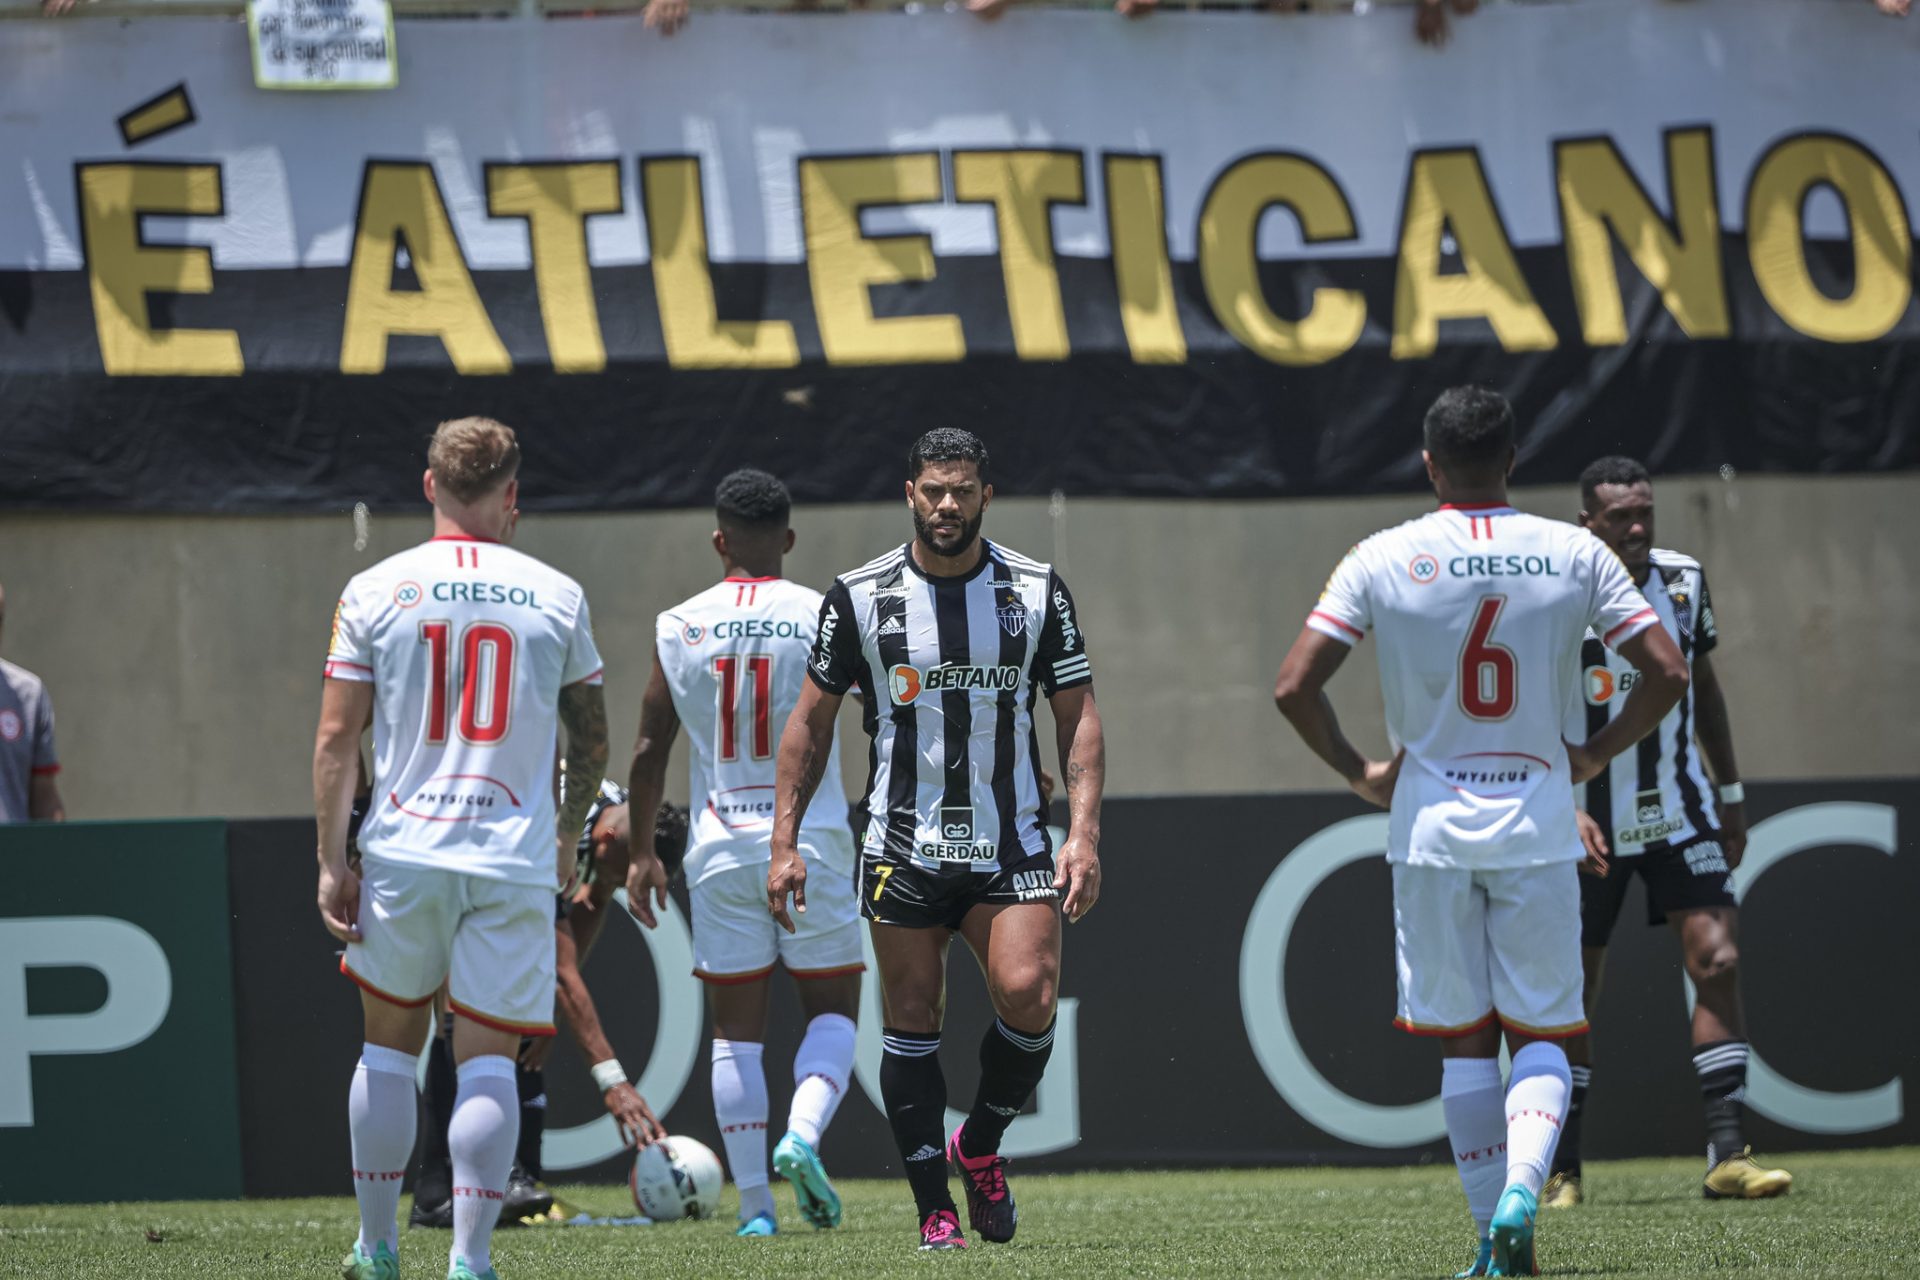 Atlético-MG vence o Carabobo e avança à 3ª fase prévia da Libertadores